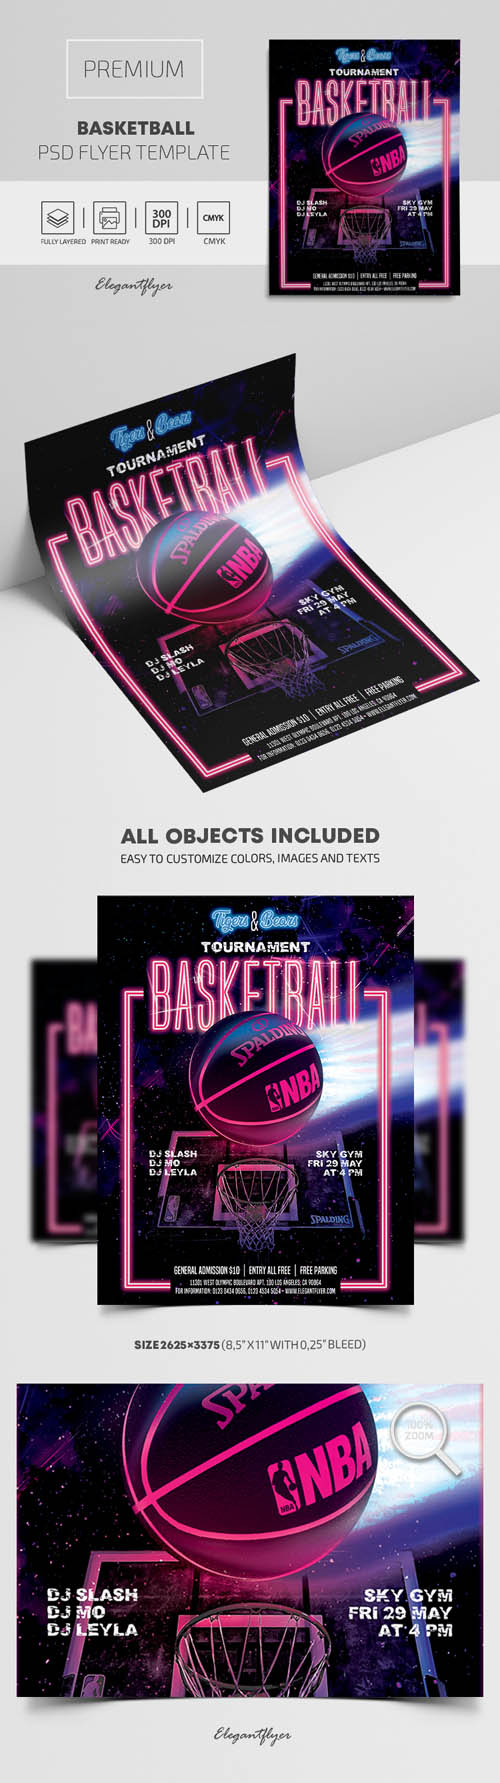 Basketball Premium PSD Flyer Template